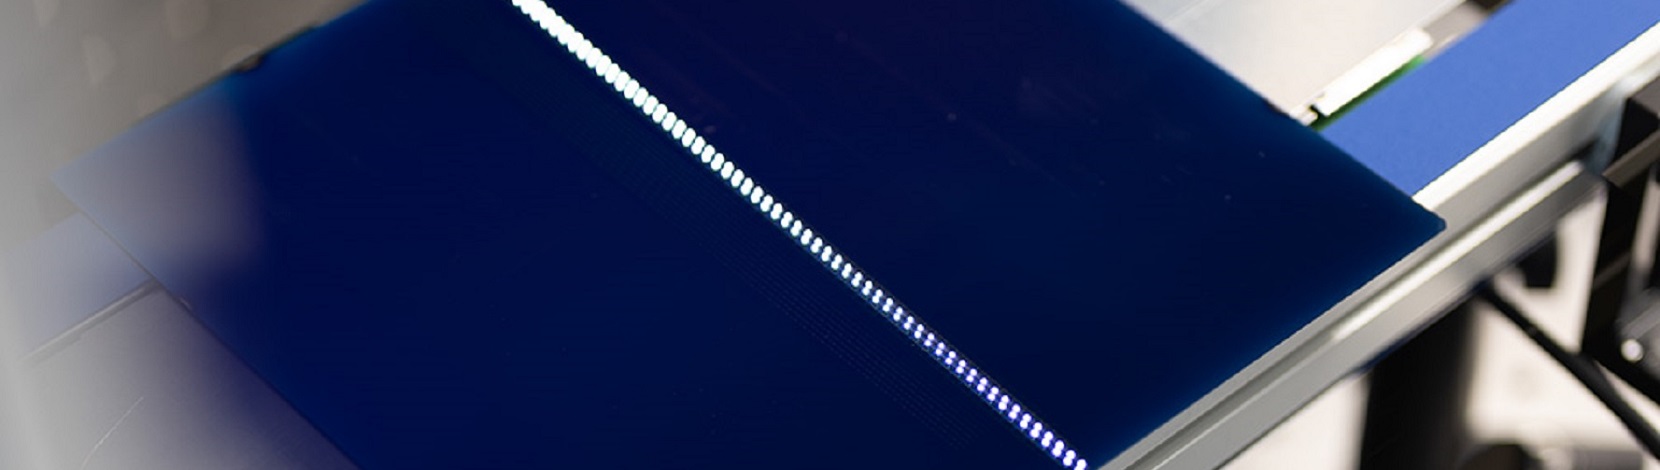 Une installation laser usine les grands wafers à haute vitesse – Electrosuisse